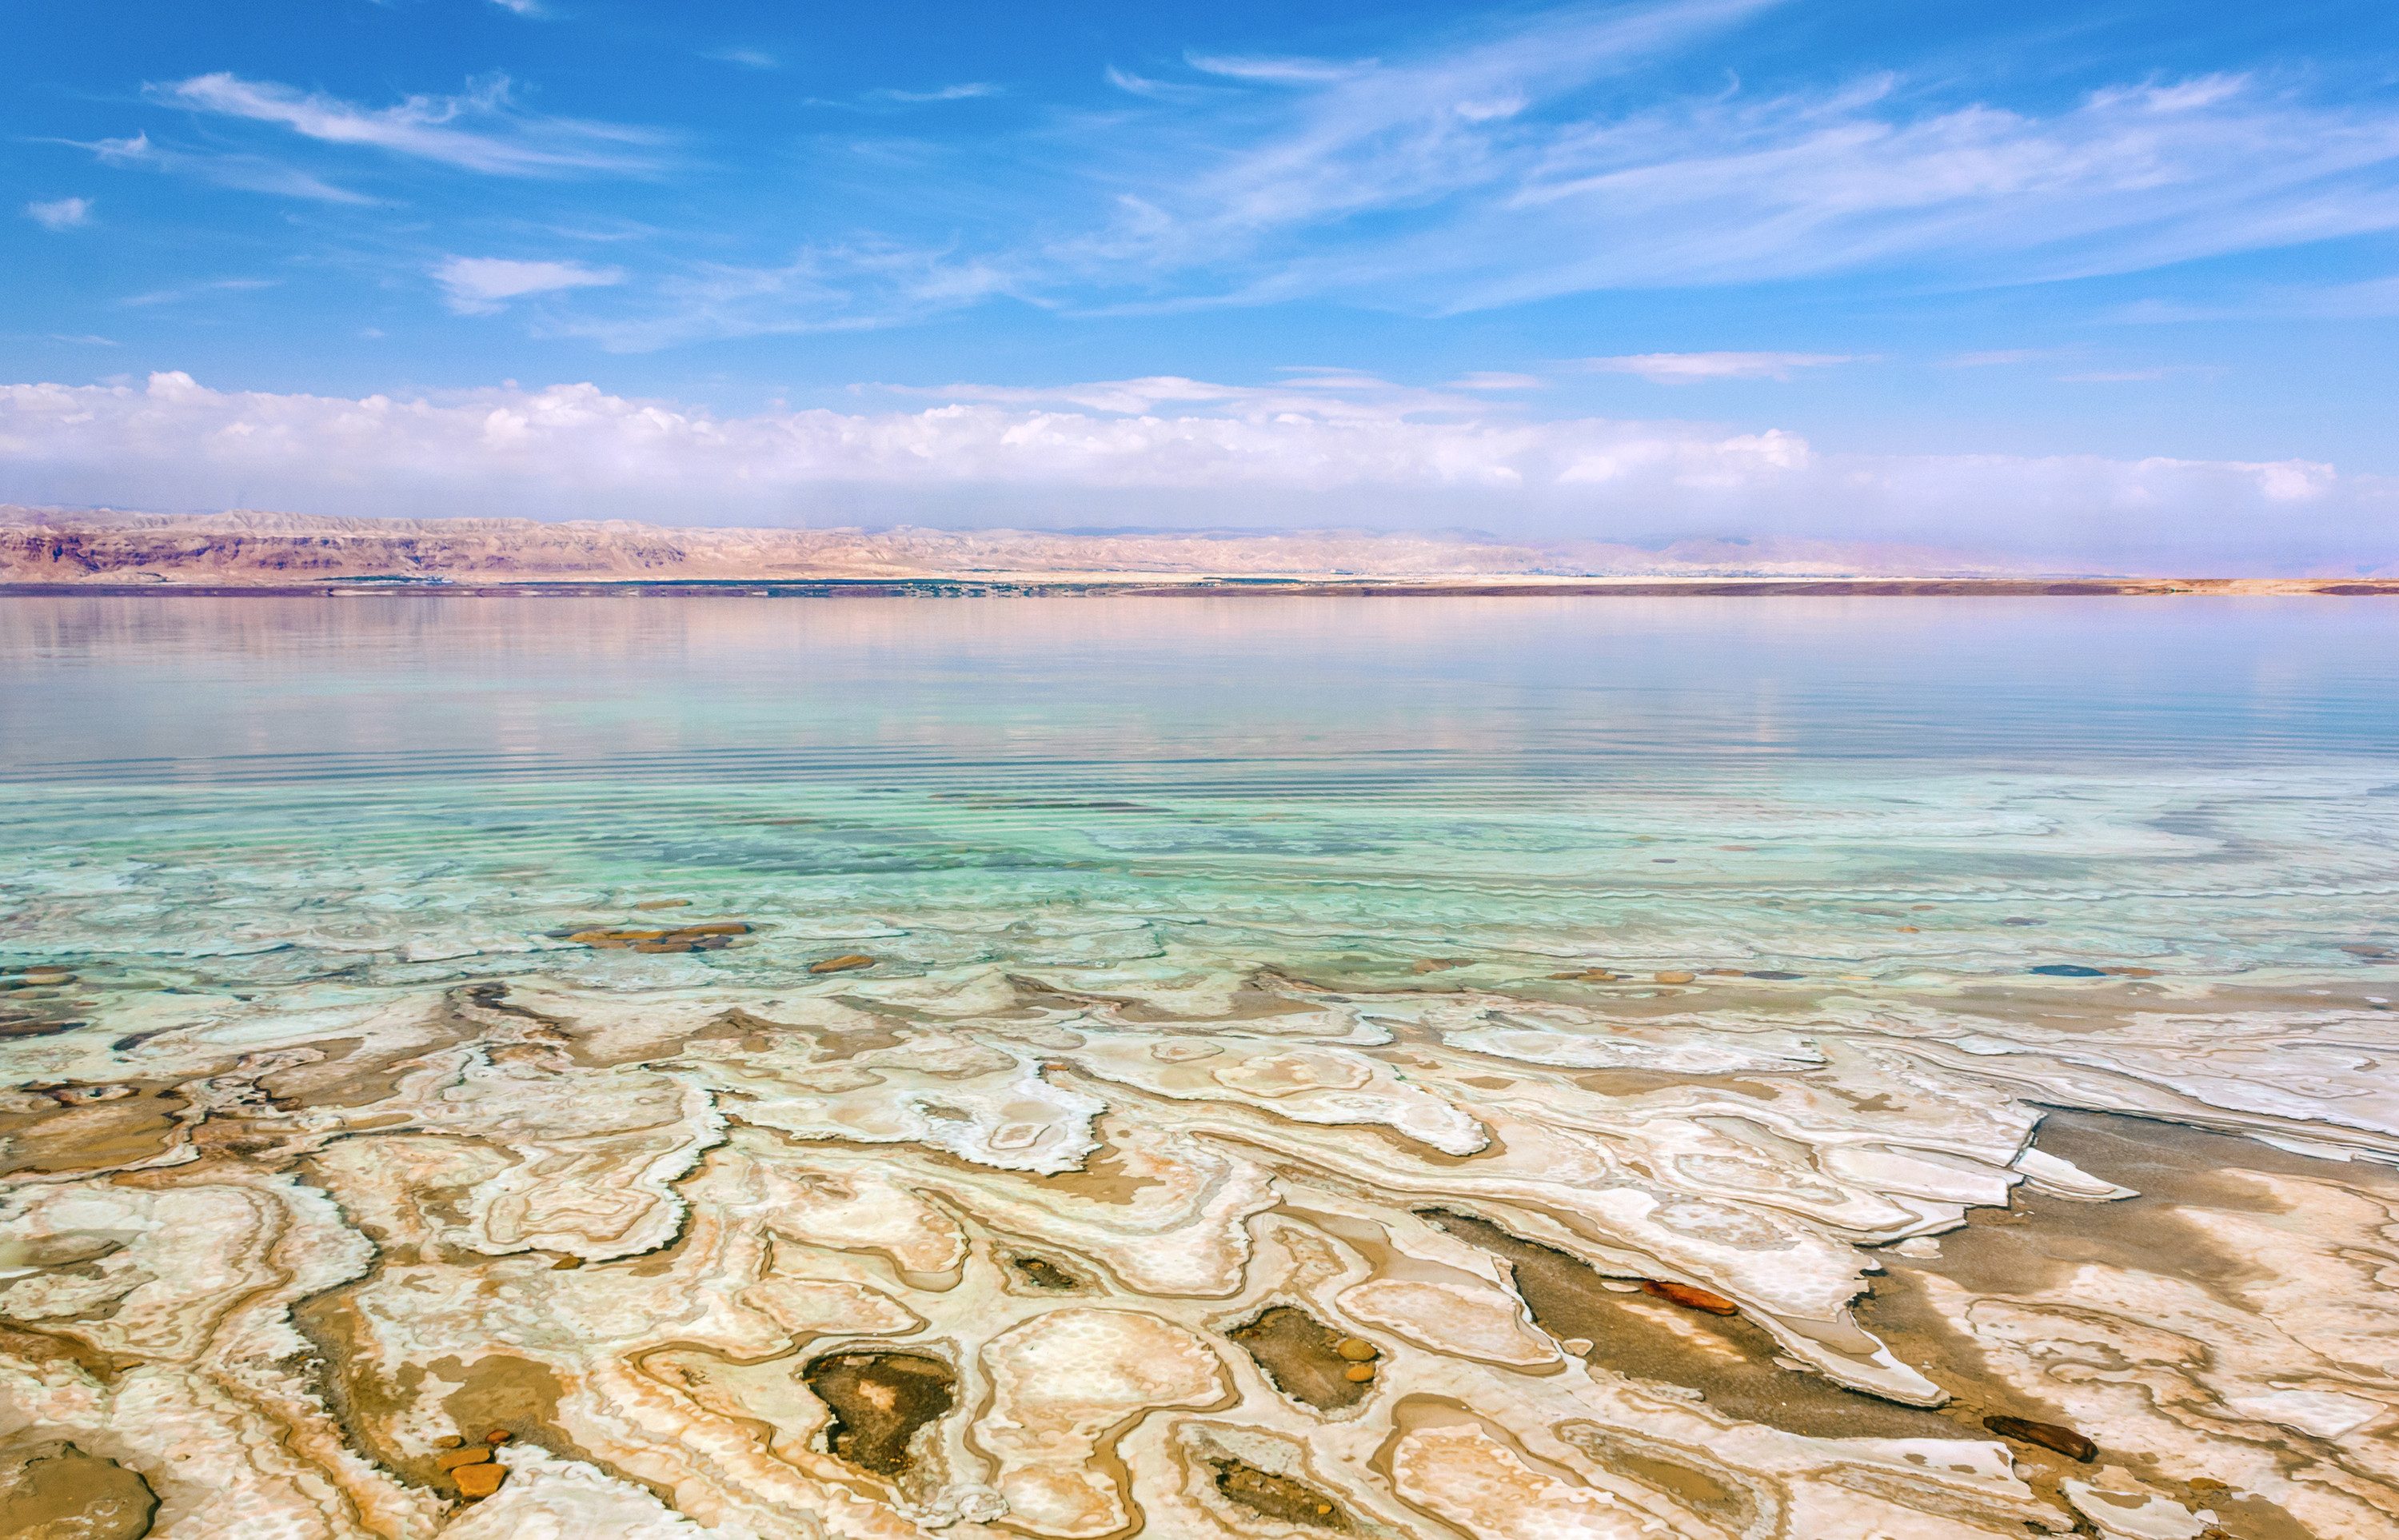 informeel Weg huis Duplicaat Dode Zee (Jordanië) | Tips & bezienswaardigheden - 333travel